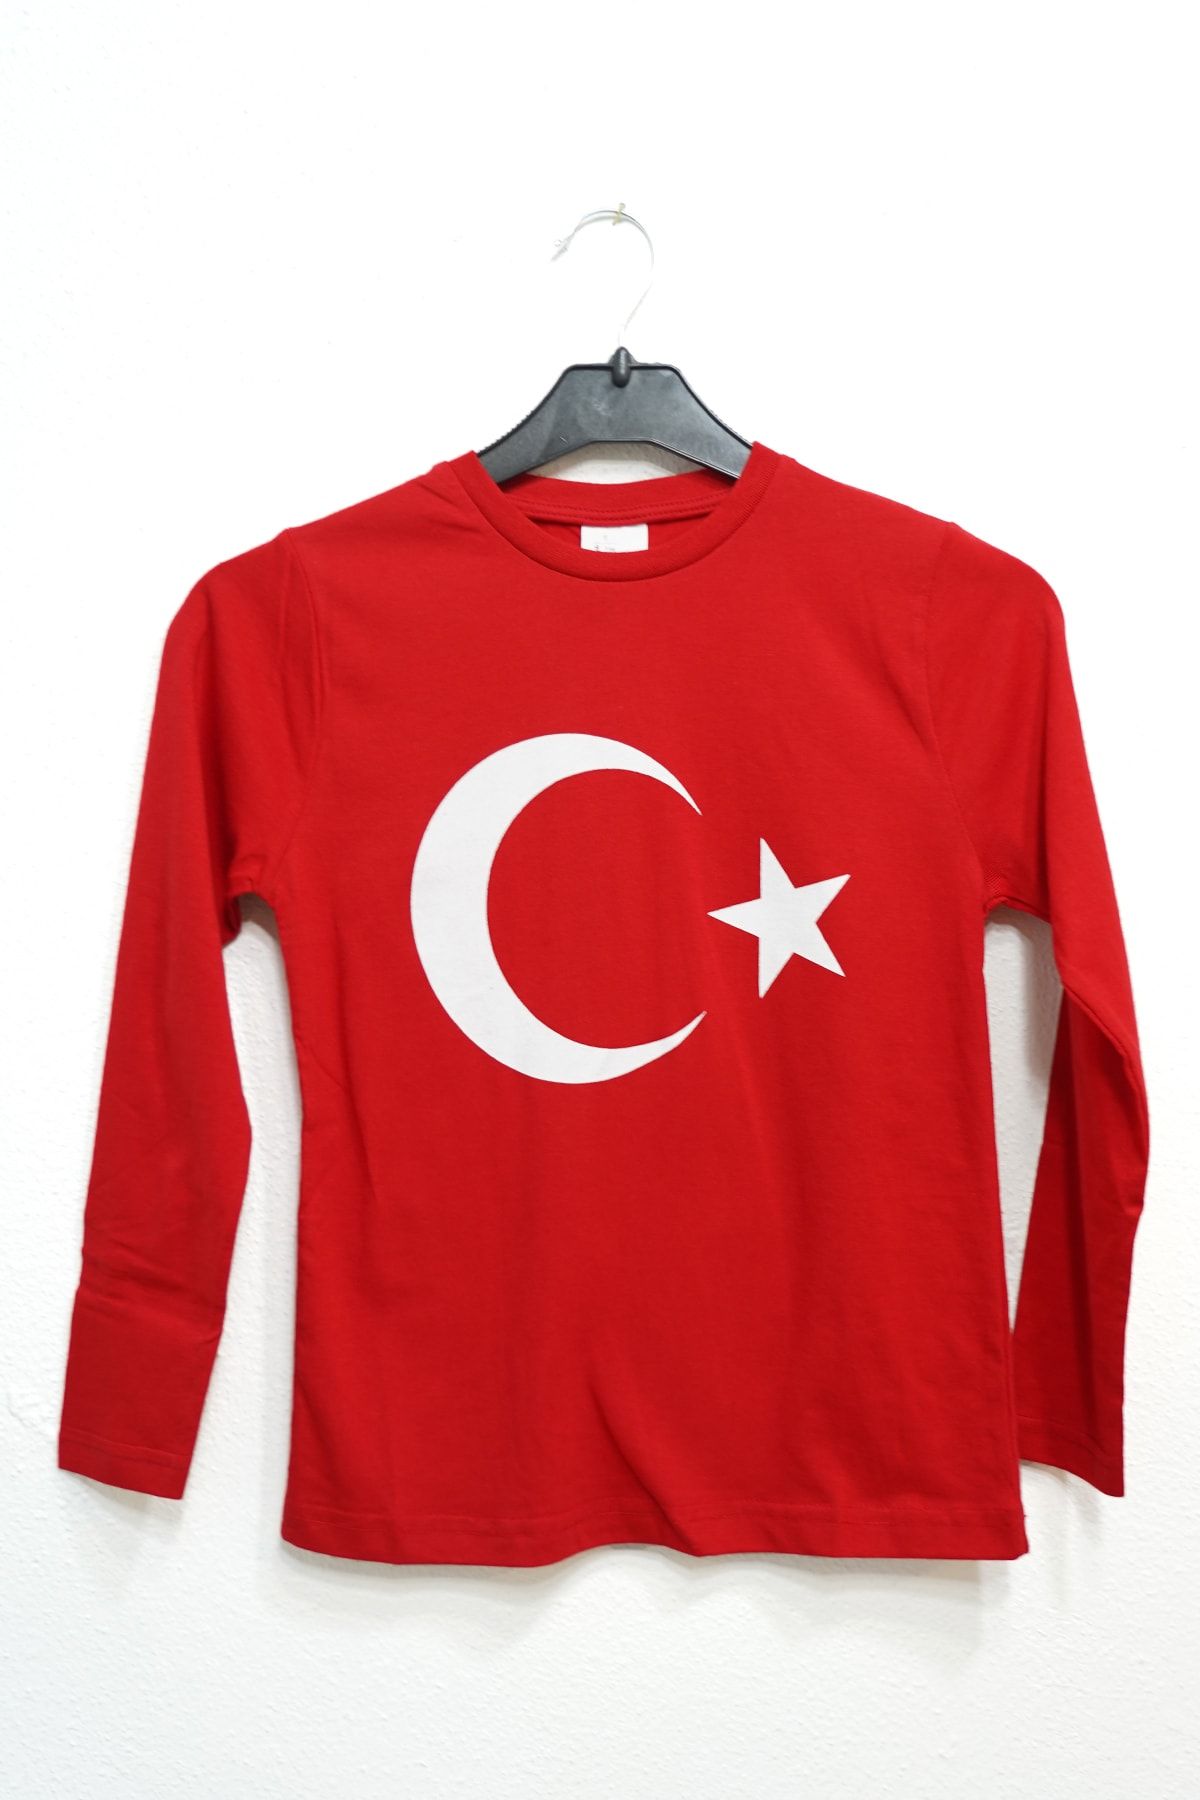 Yare Cumhuriyet Bayramına Özel Unısex Çocuk Uzun Kollu Türk Bayrağı Baskılı Kırmızı T-shirt